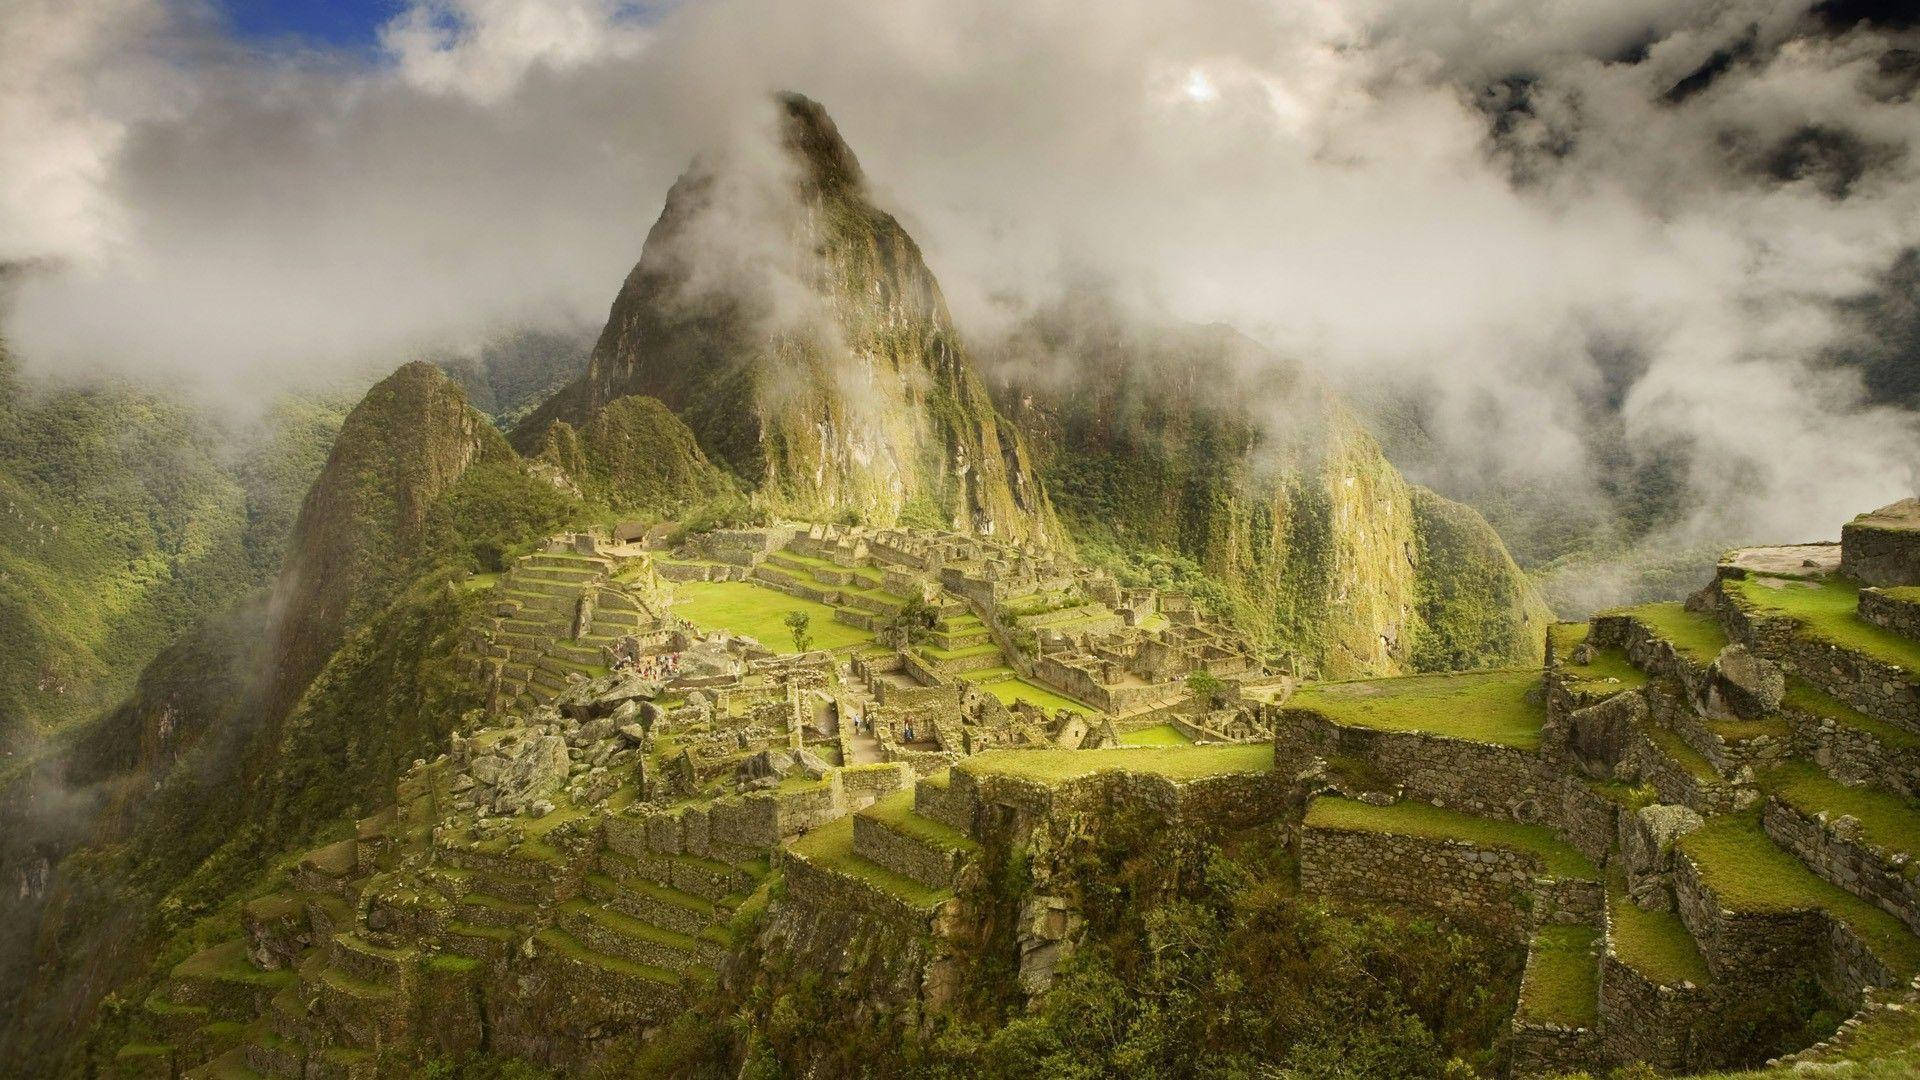 Stunning Scenery Of Machu Picchu In Peru